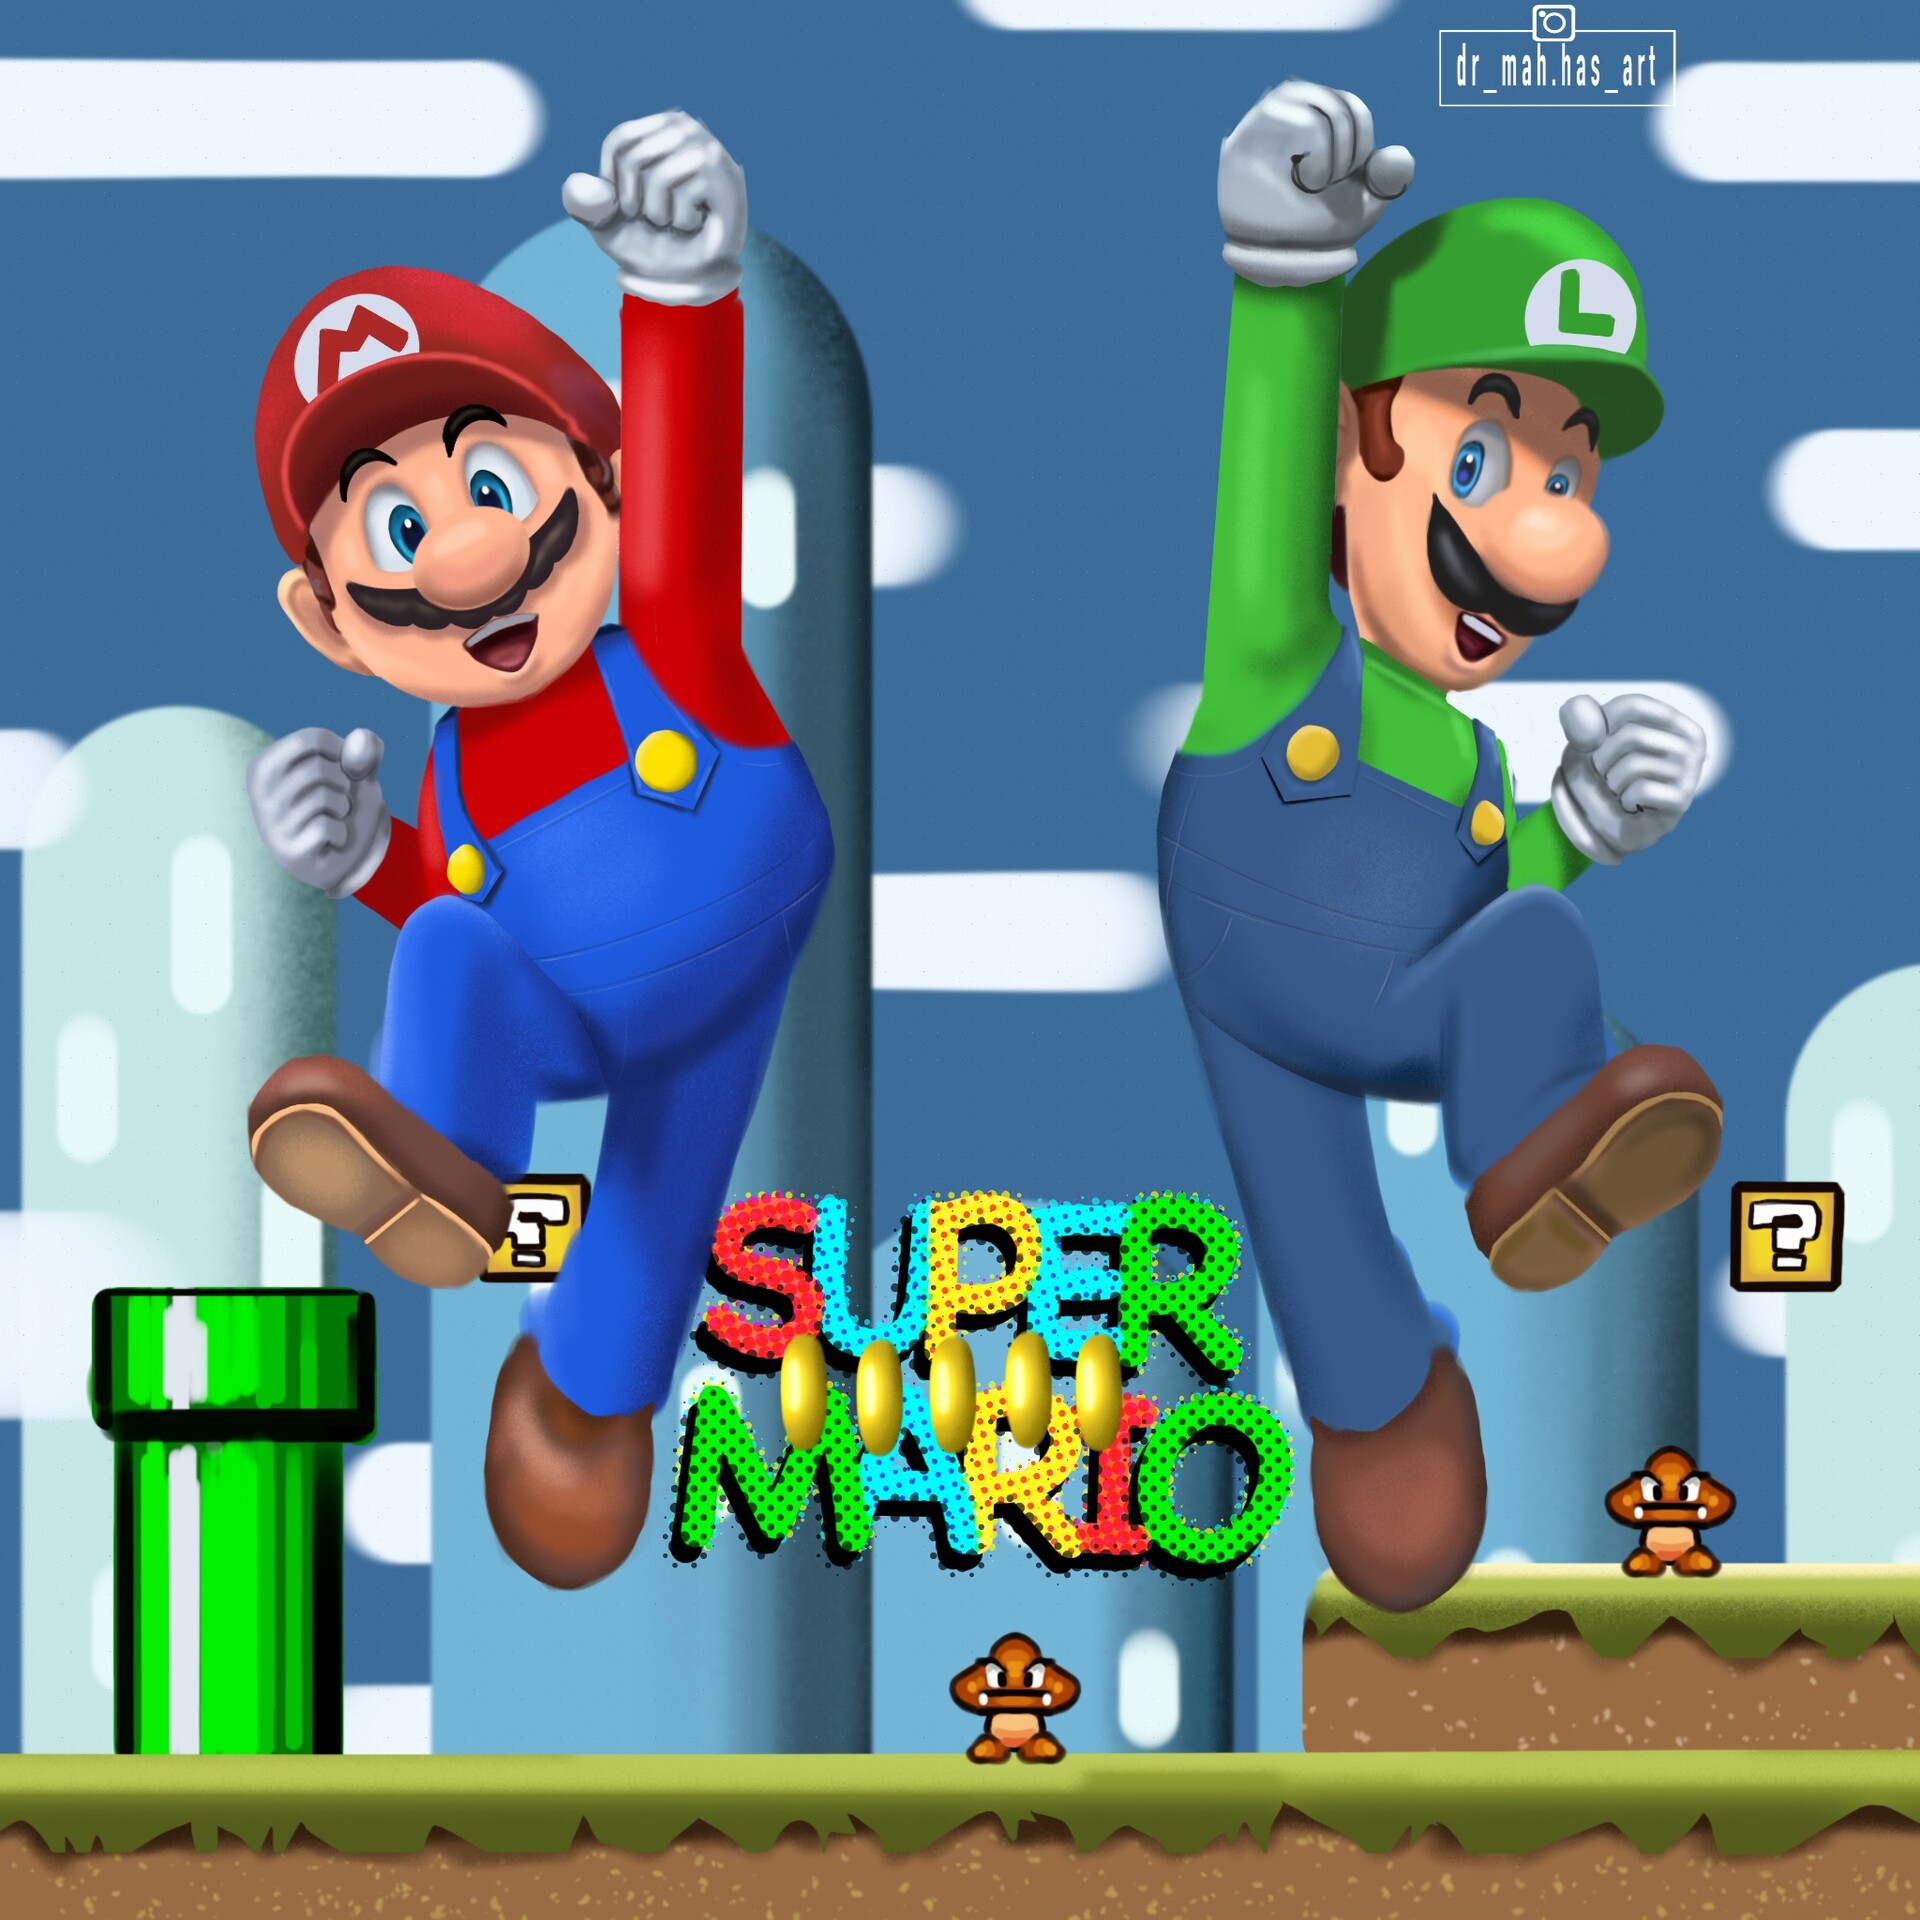 ArtStation - cenário do jogo super Mario bros